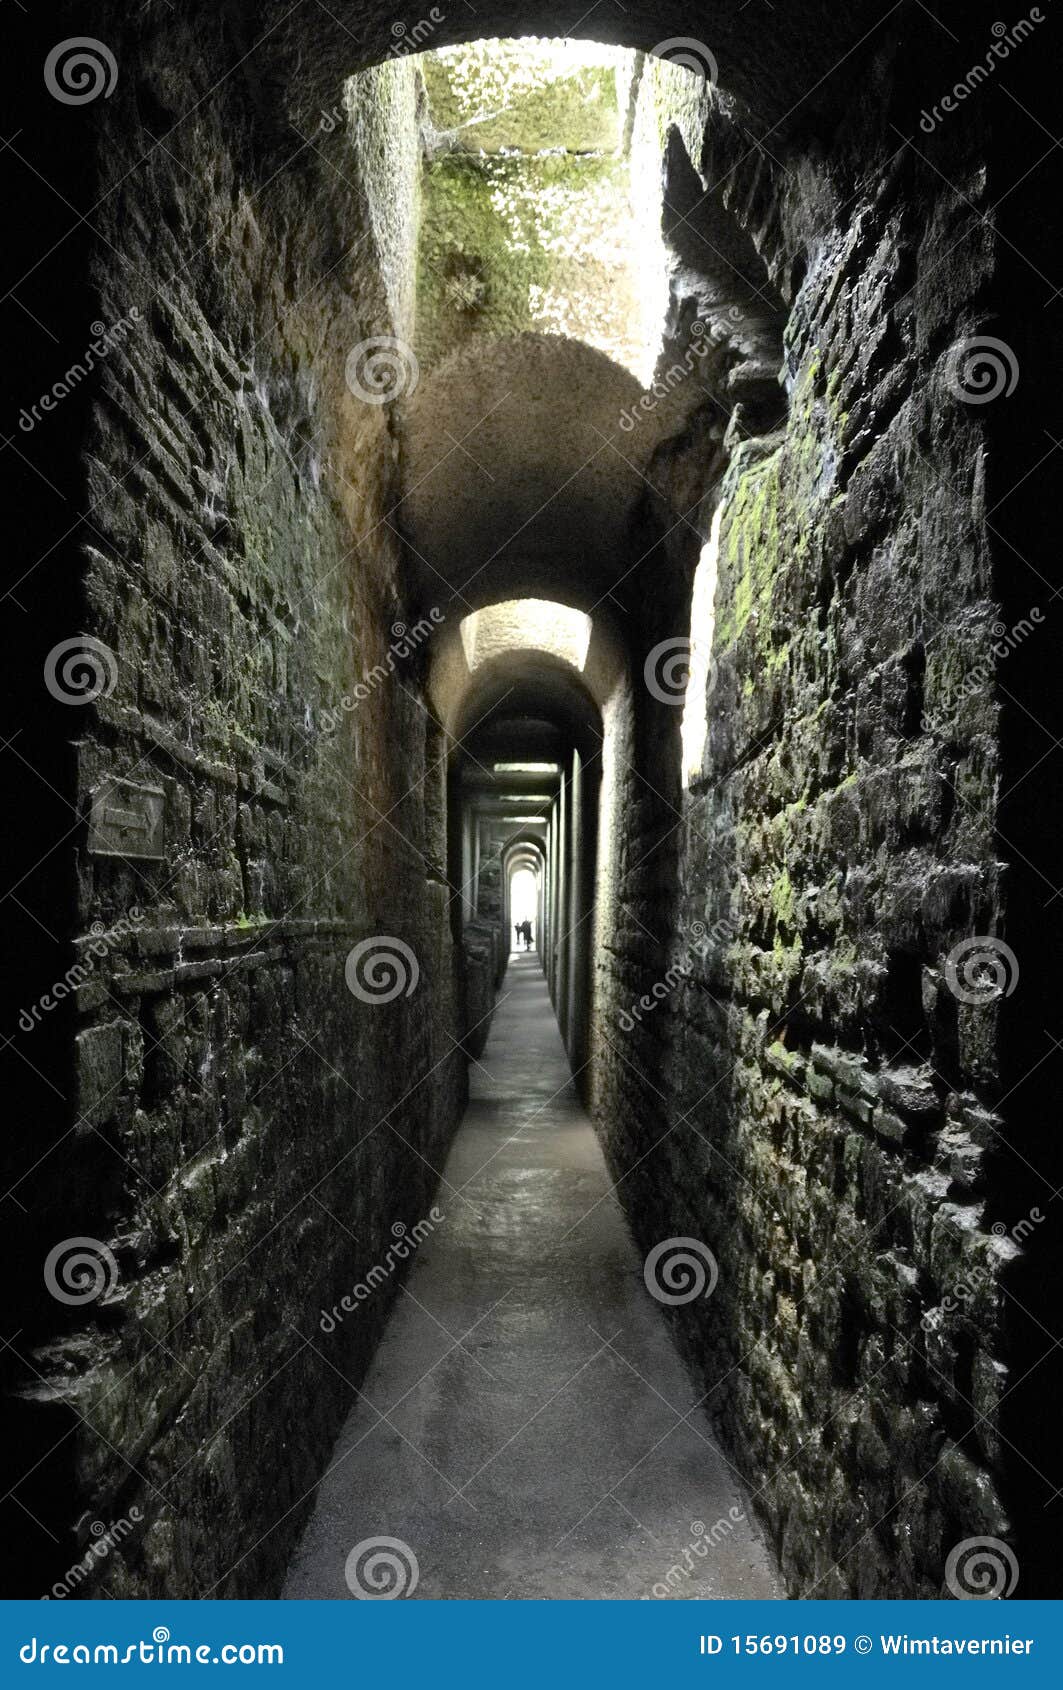 visa doce que te diviertas Baños romanos subterráneos imagen de archivo. Imagen de calzada - 15691089